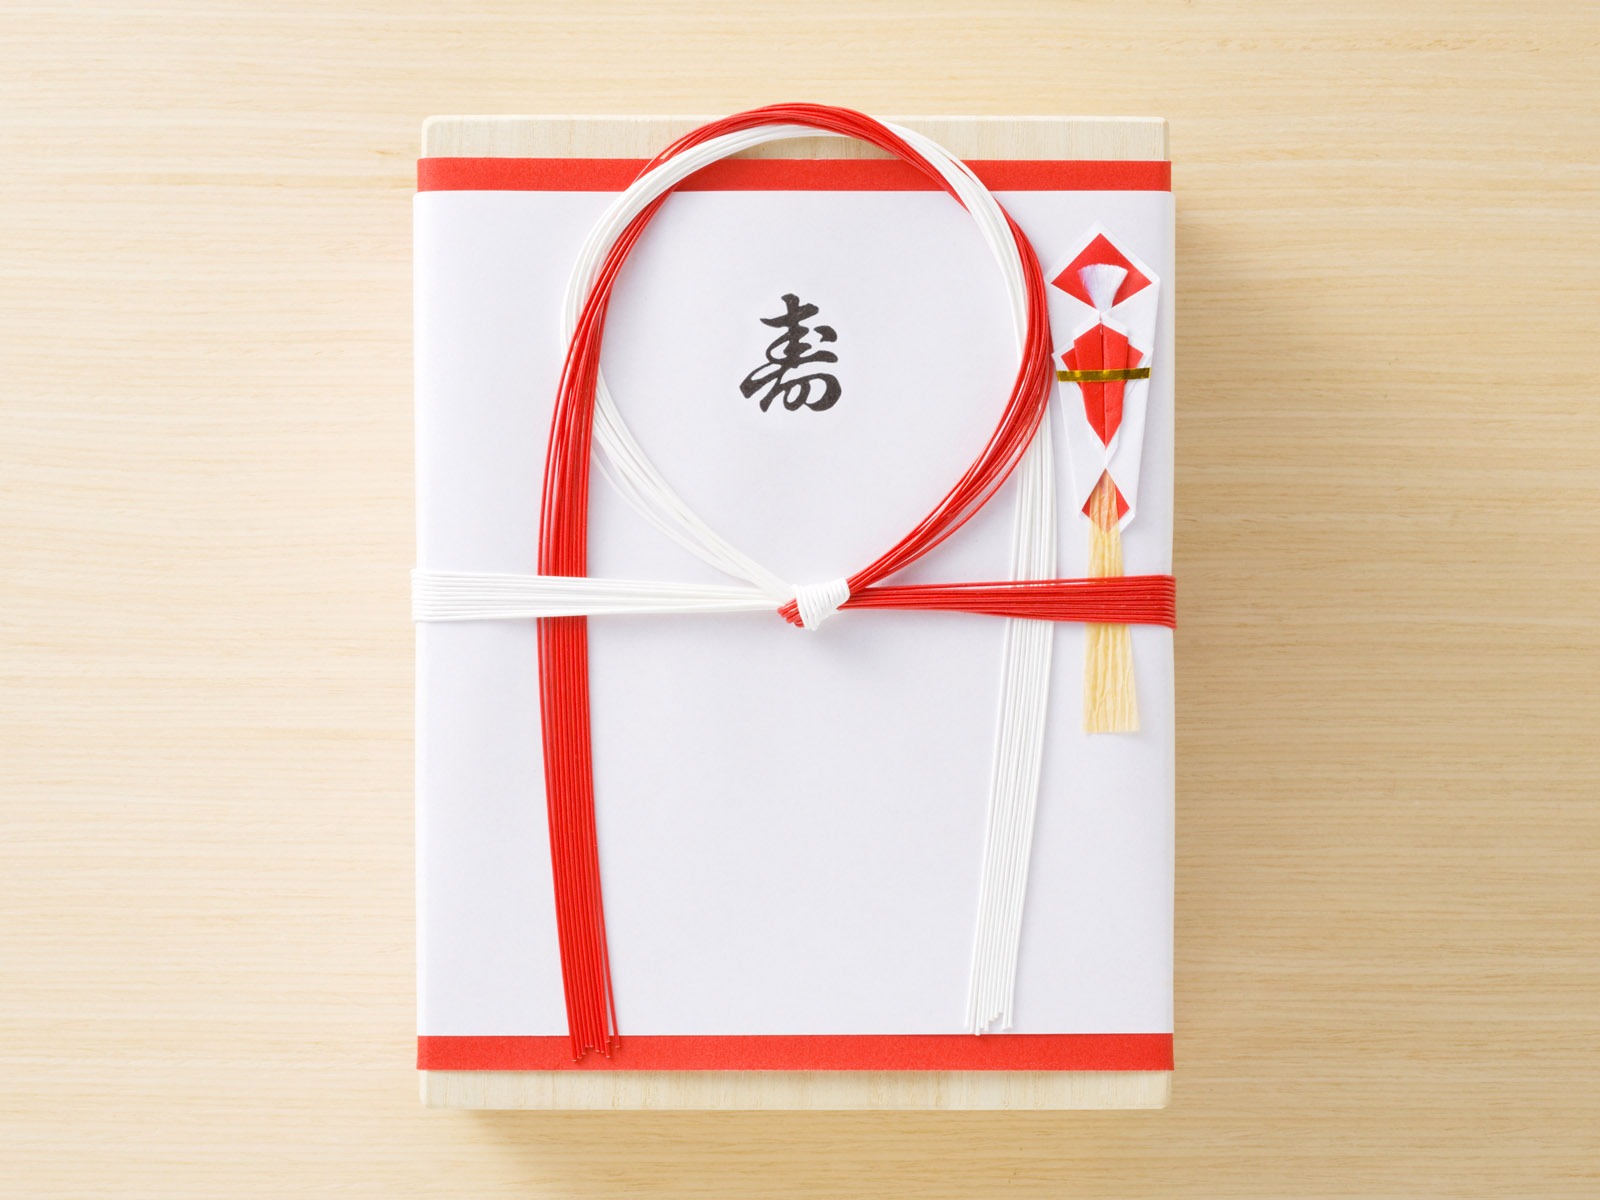 Fondos de año nuevo japonés Cultura (3) #16 - 1600x1200